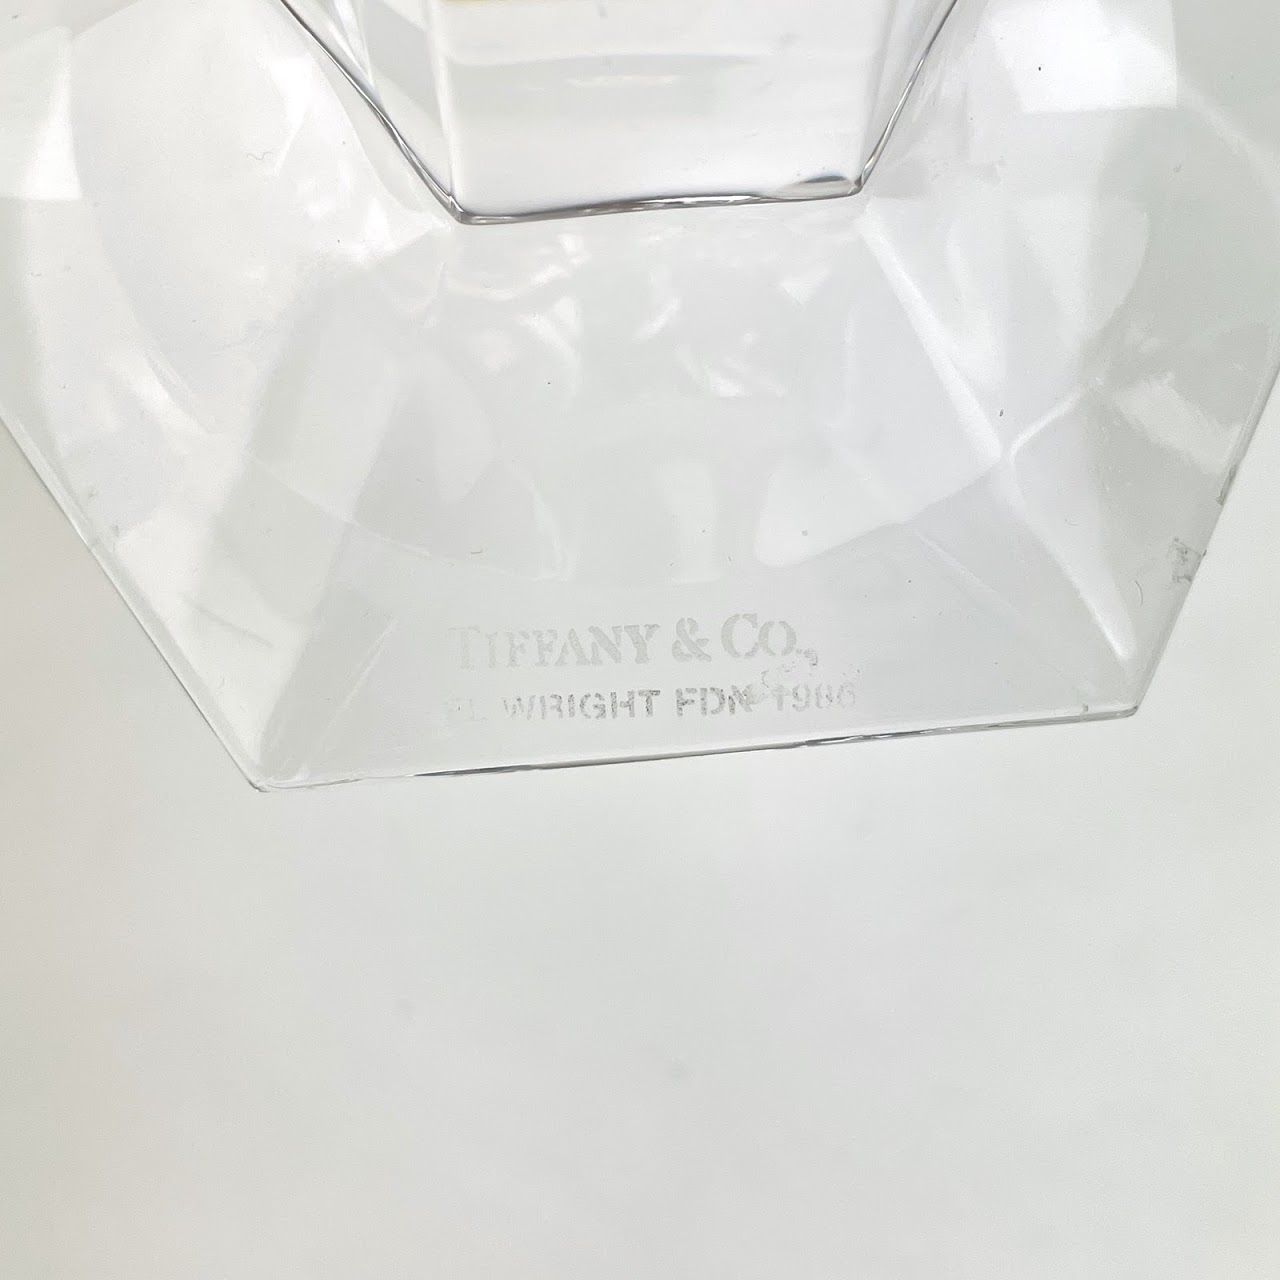 Tiffany & Co. x Frank Lloyd Wright Crystal Candlestick Pair